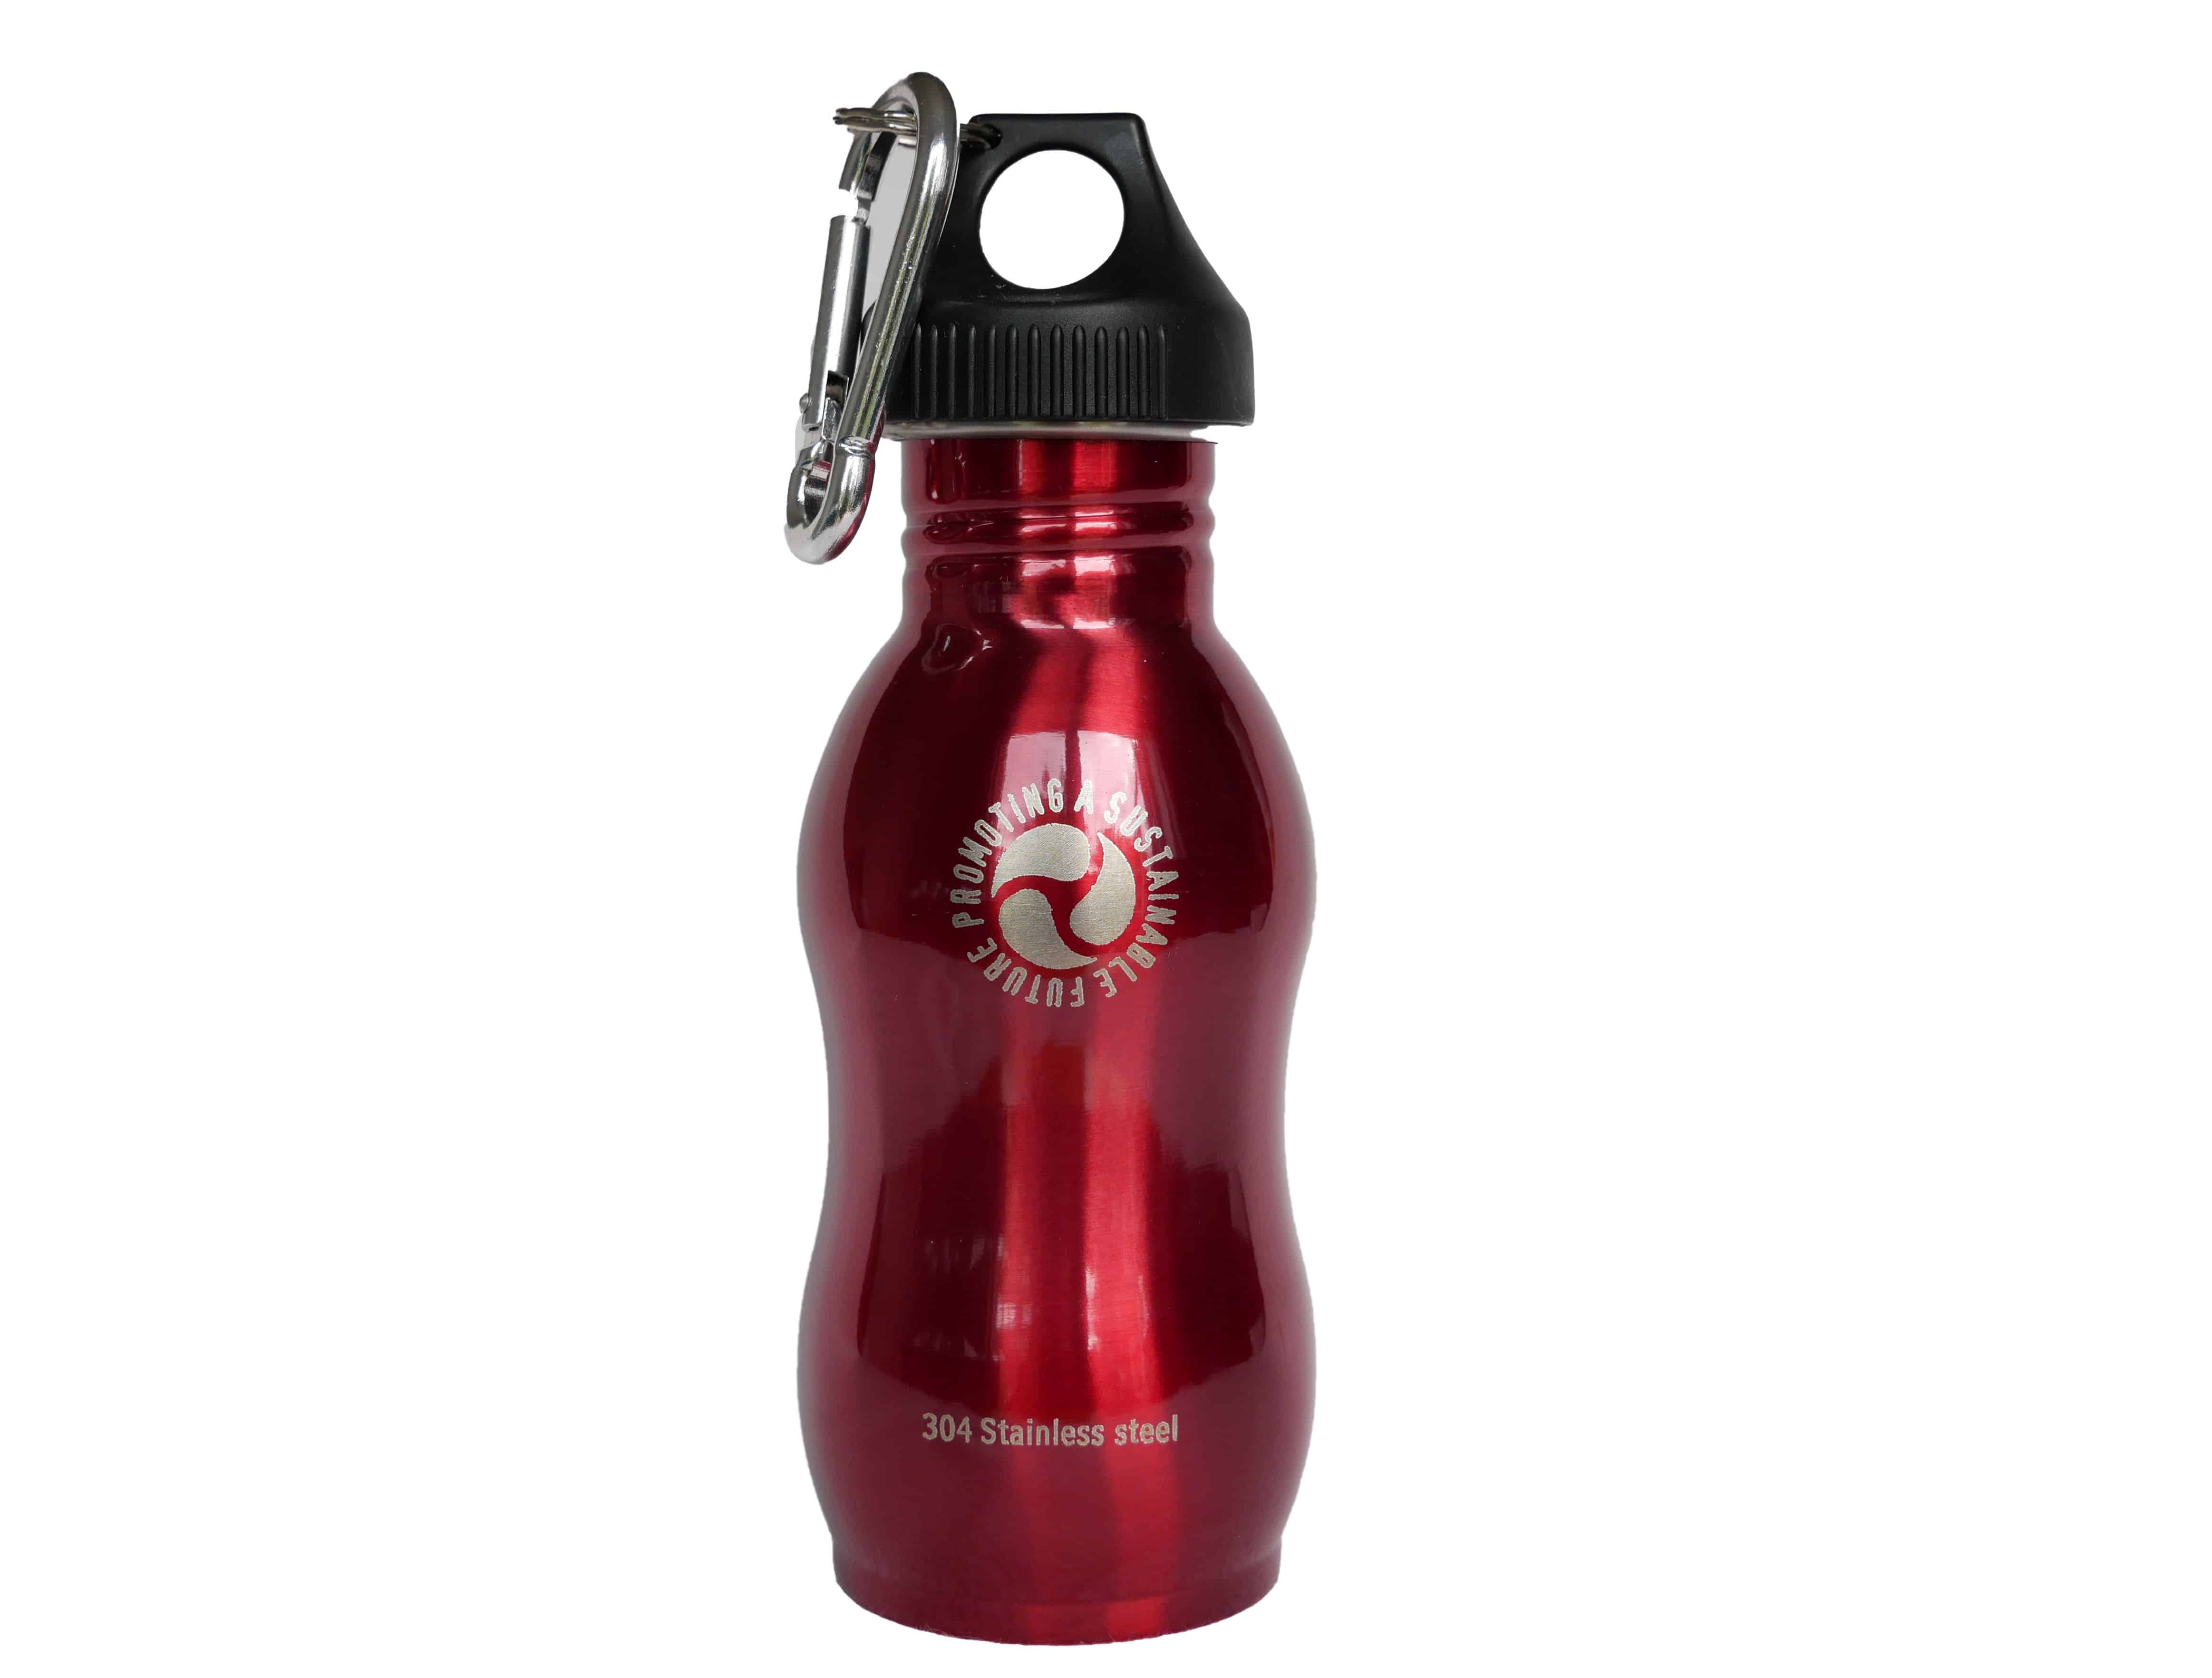 500ml Red Steel Water Bottle by Onya